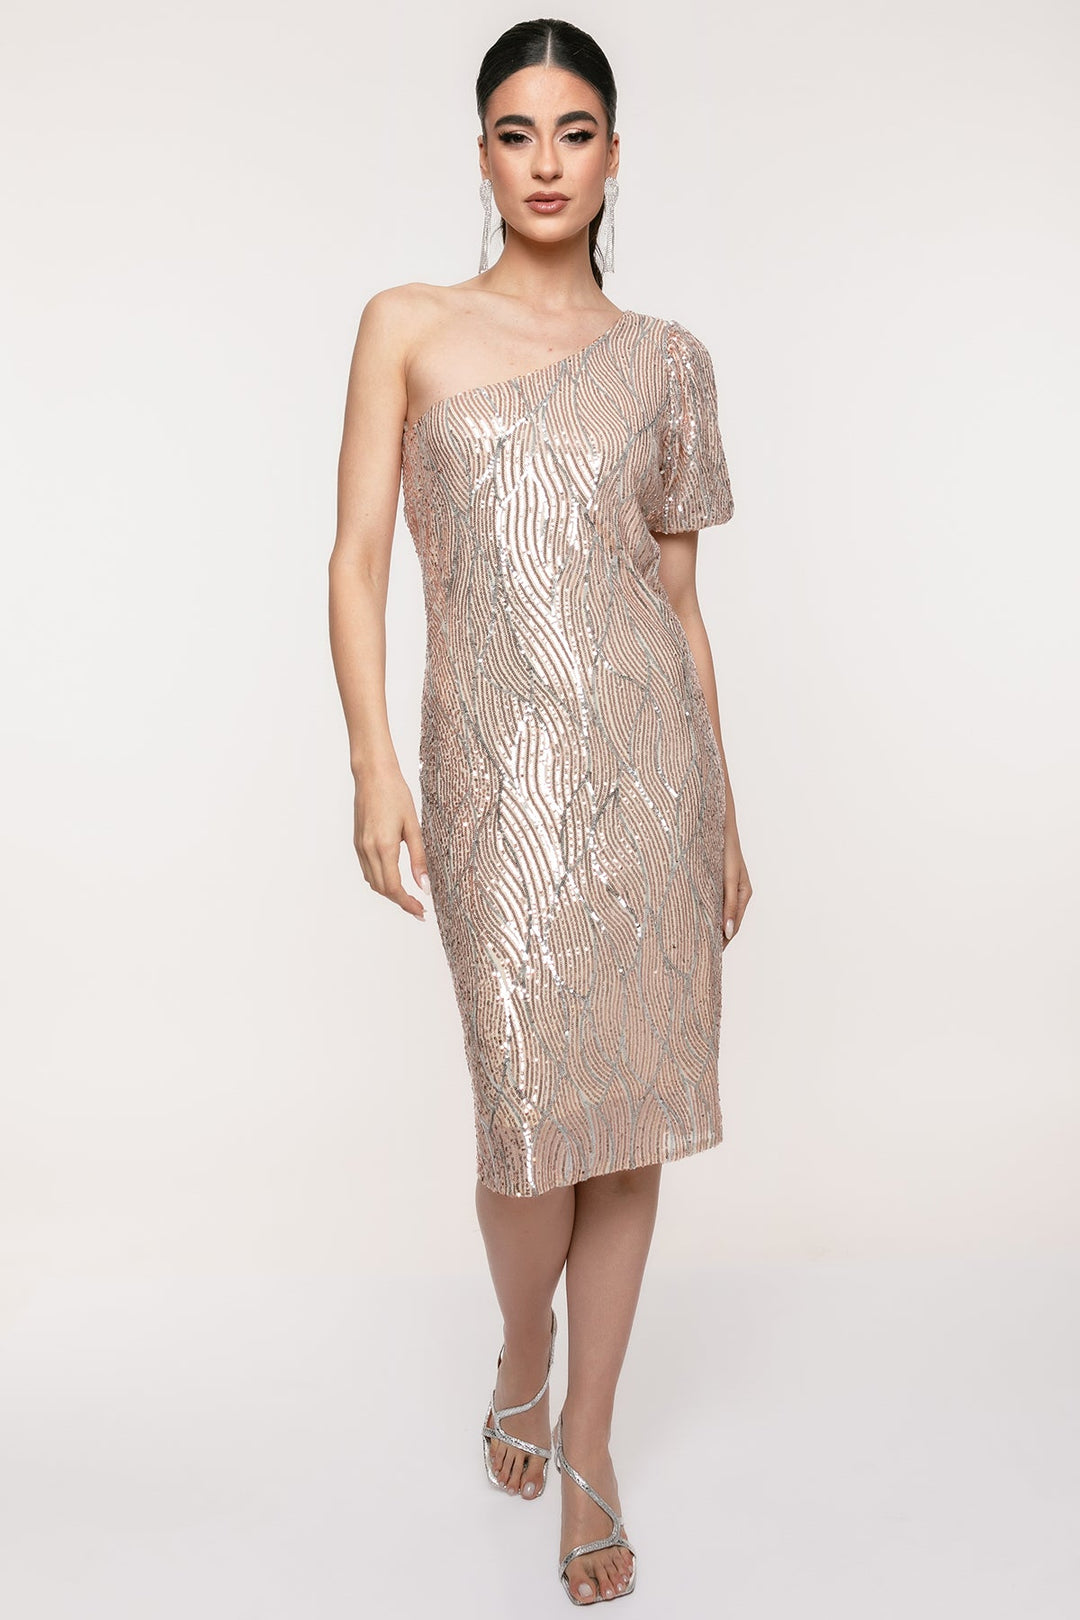 Φόρεμα μίντι μονόπλευρο παγιέτα Coelia - A Collection Boutique